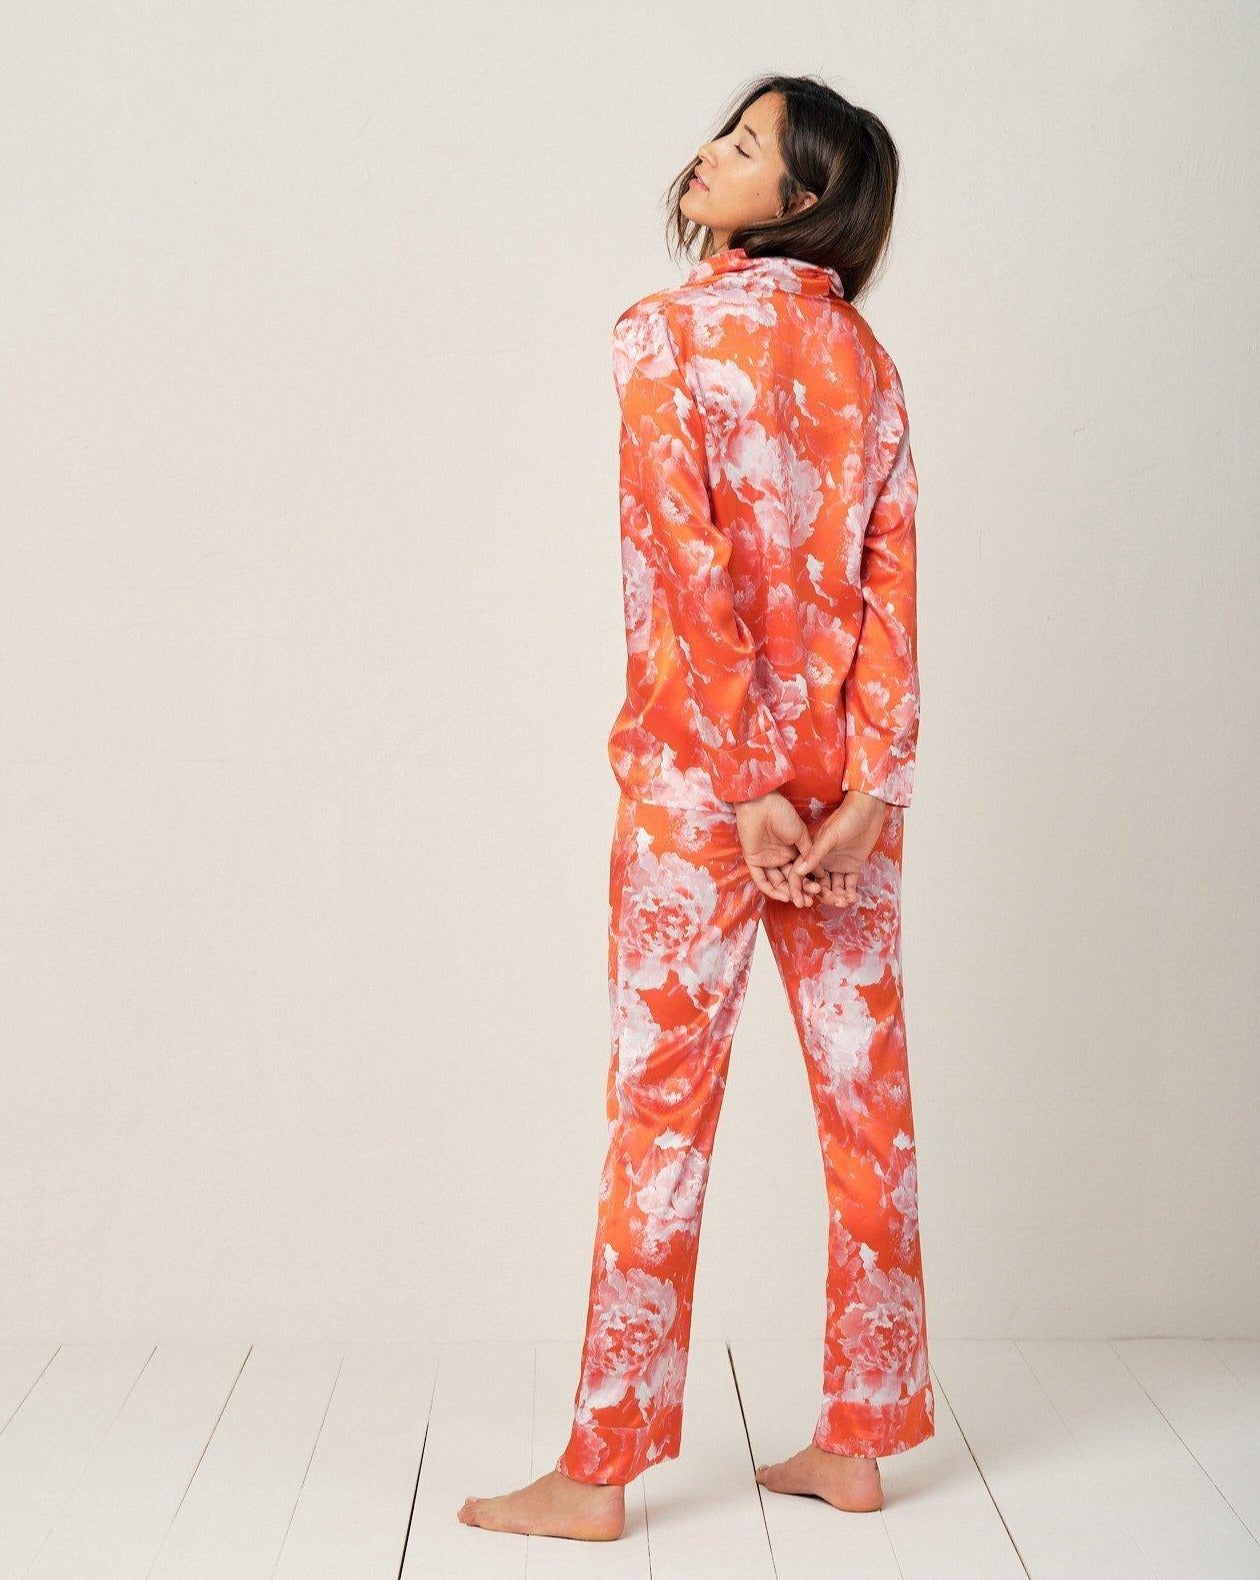 Elisabetha Silk Pyjama in Tea Garden Red - Bottom Loungewear, Pyjama, Seidenpyjama, Schlafanzug | RADICE